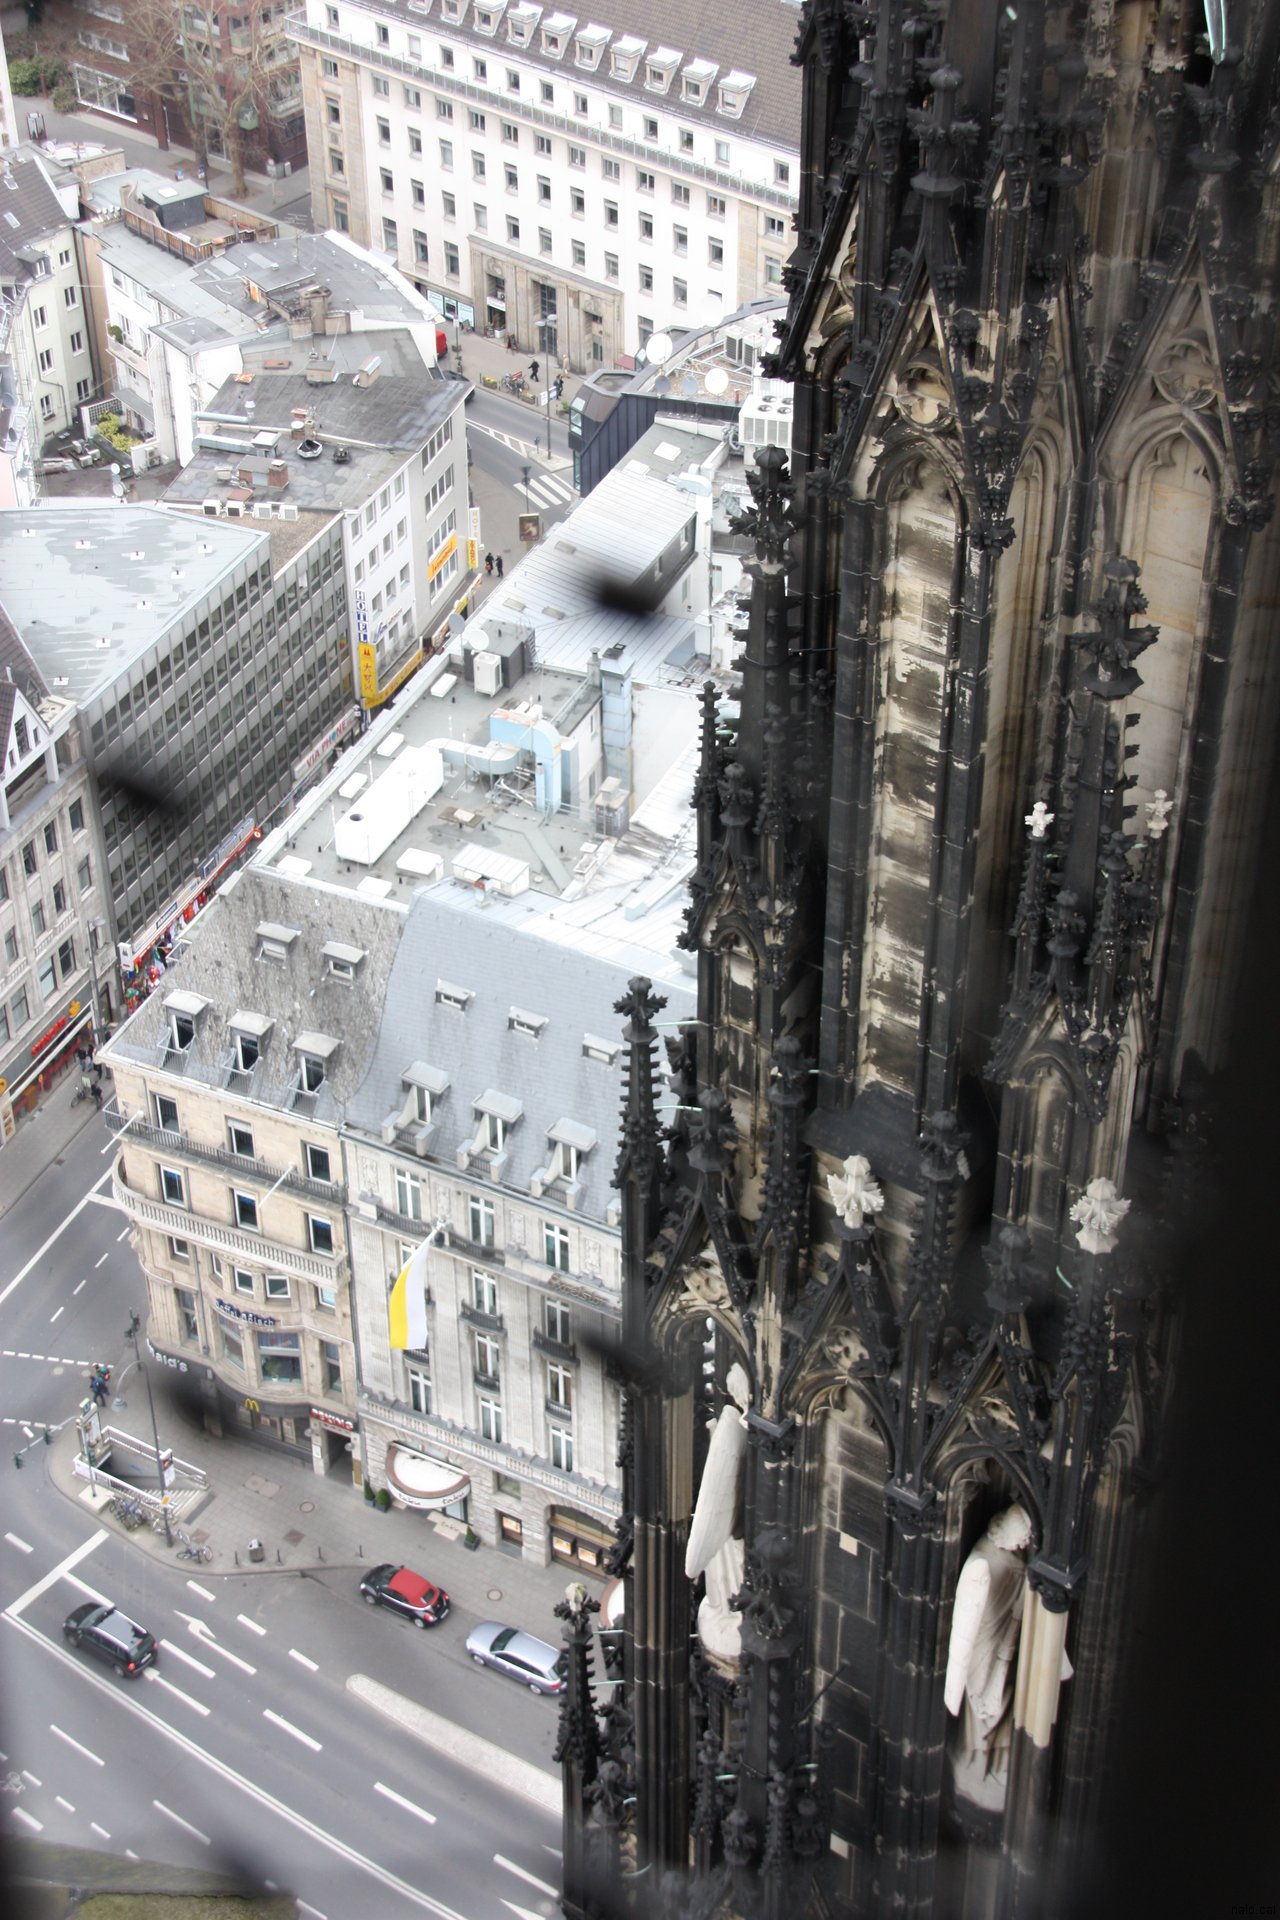 Des de dalt la catedral de Colonia